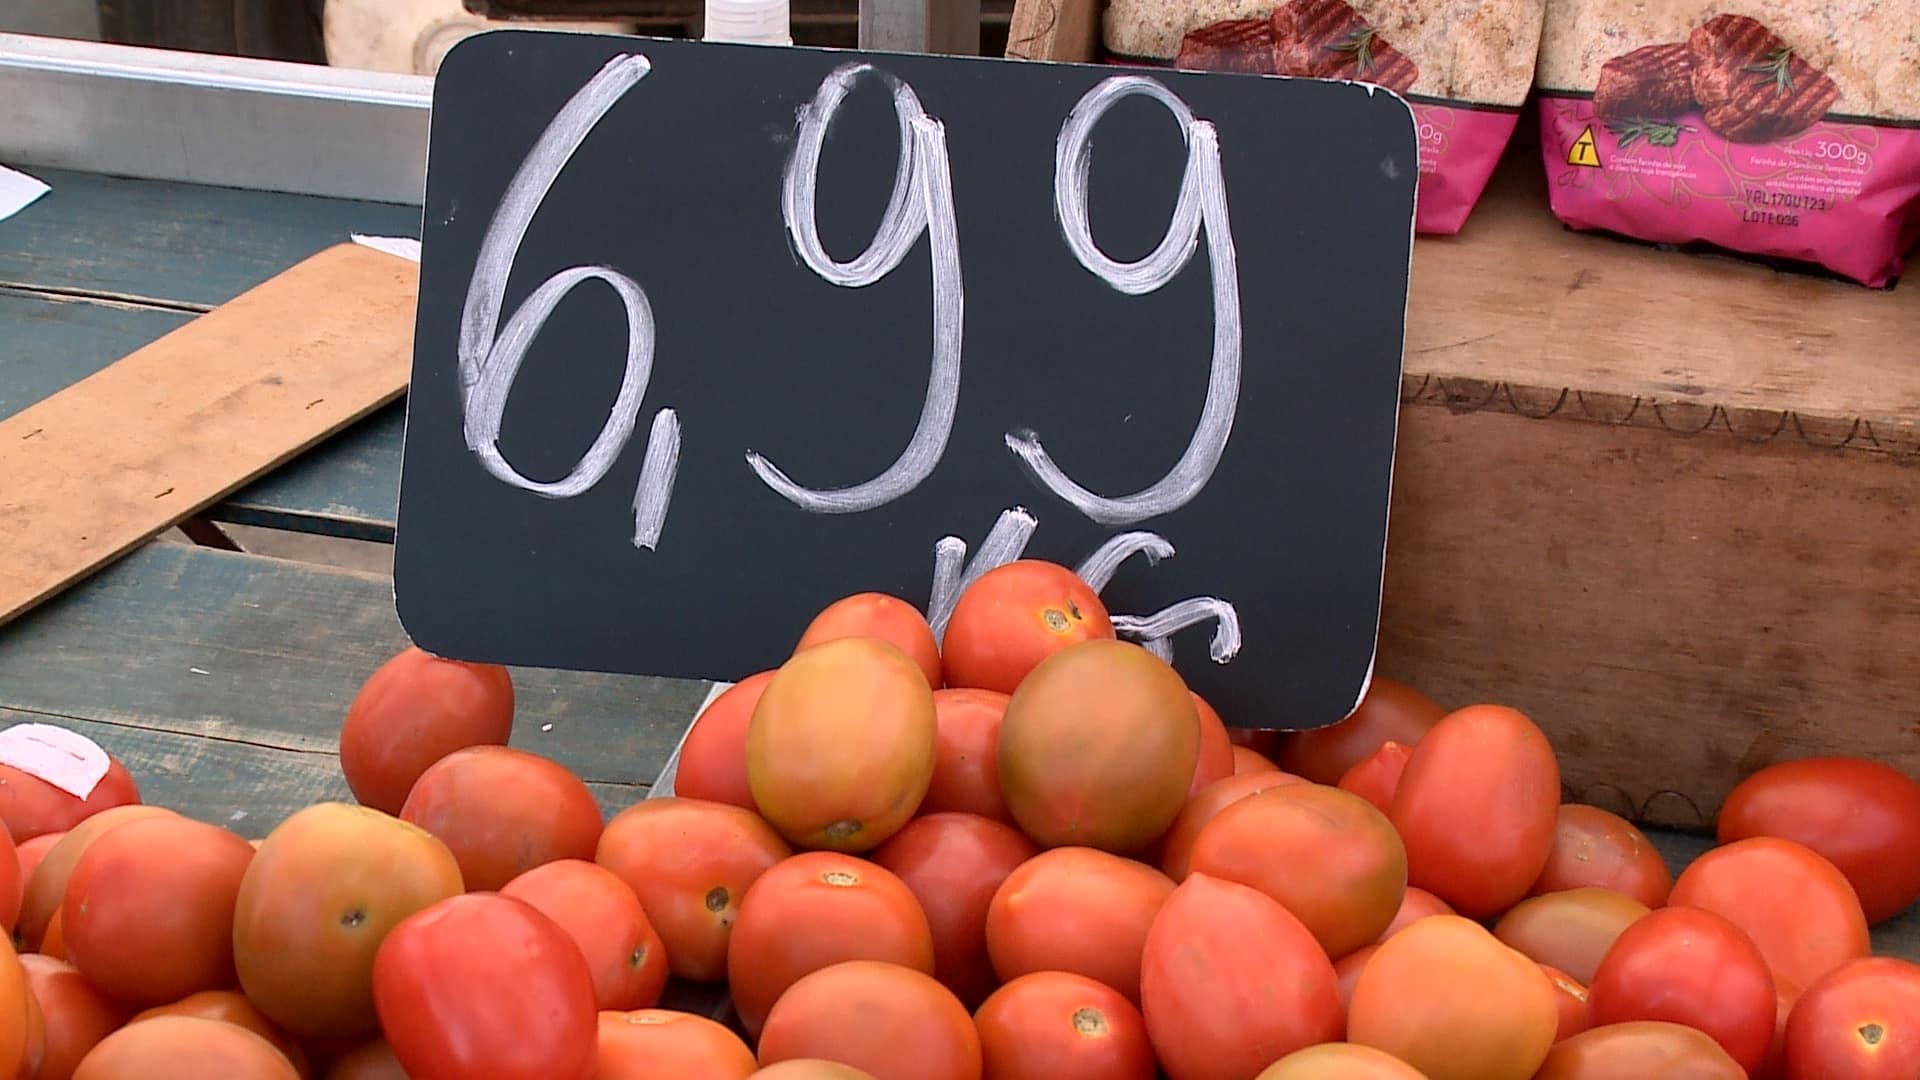 preco-do-tomate-tem-aumento-de-84%